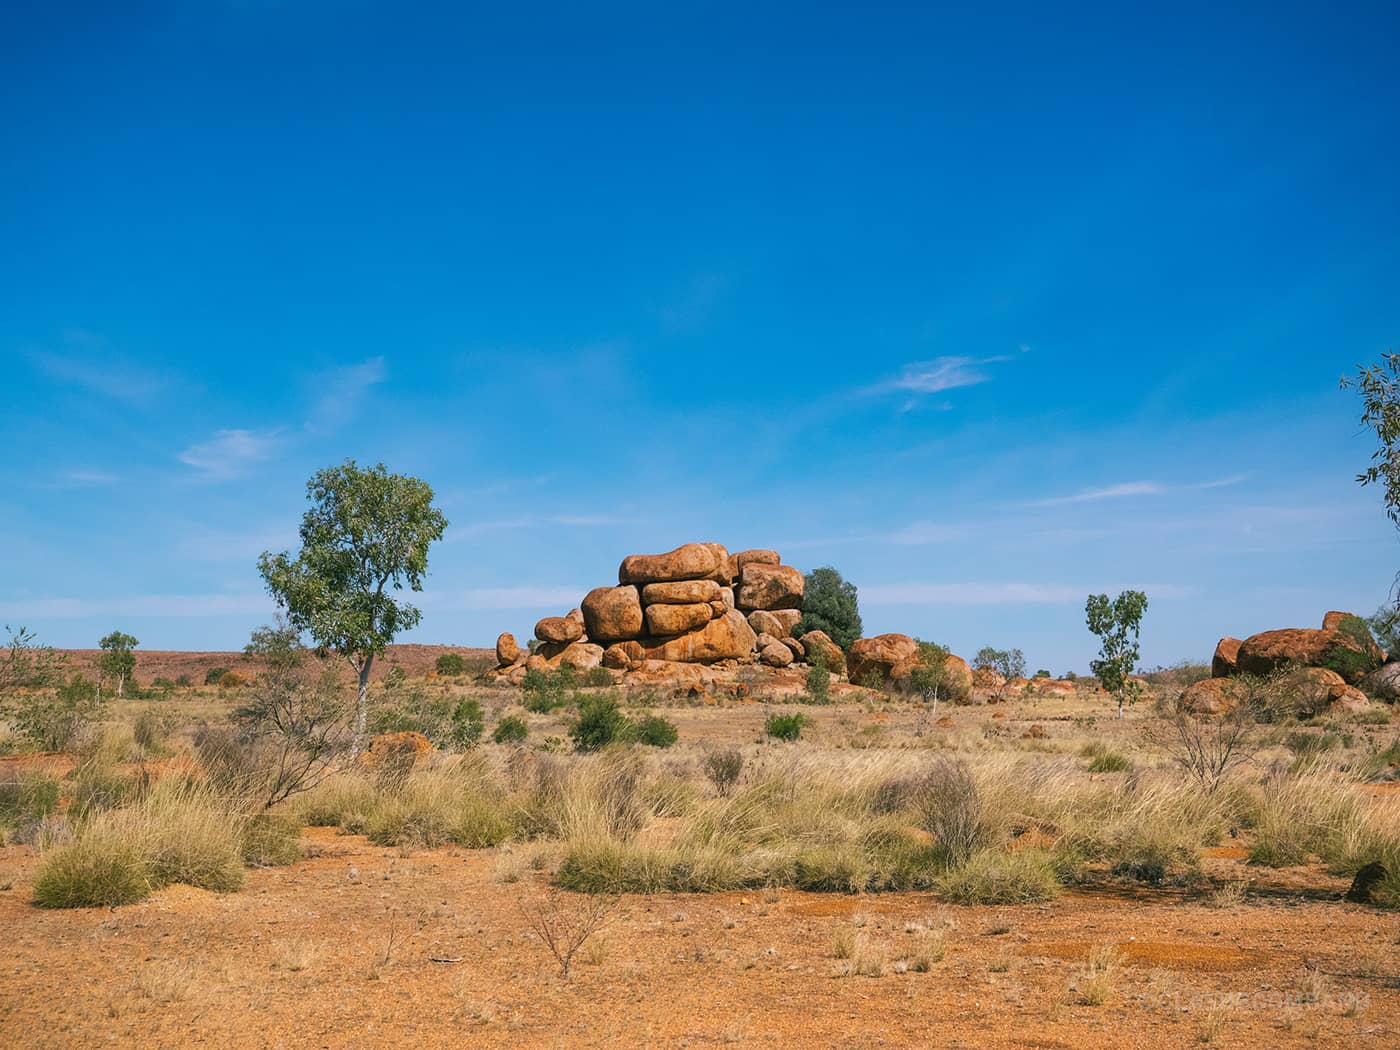 NT Australia - Karlu Karlu - Neatly stacked boulders